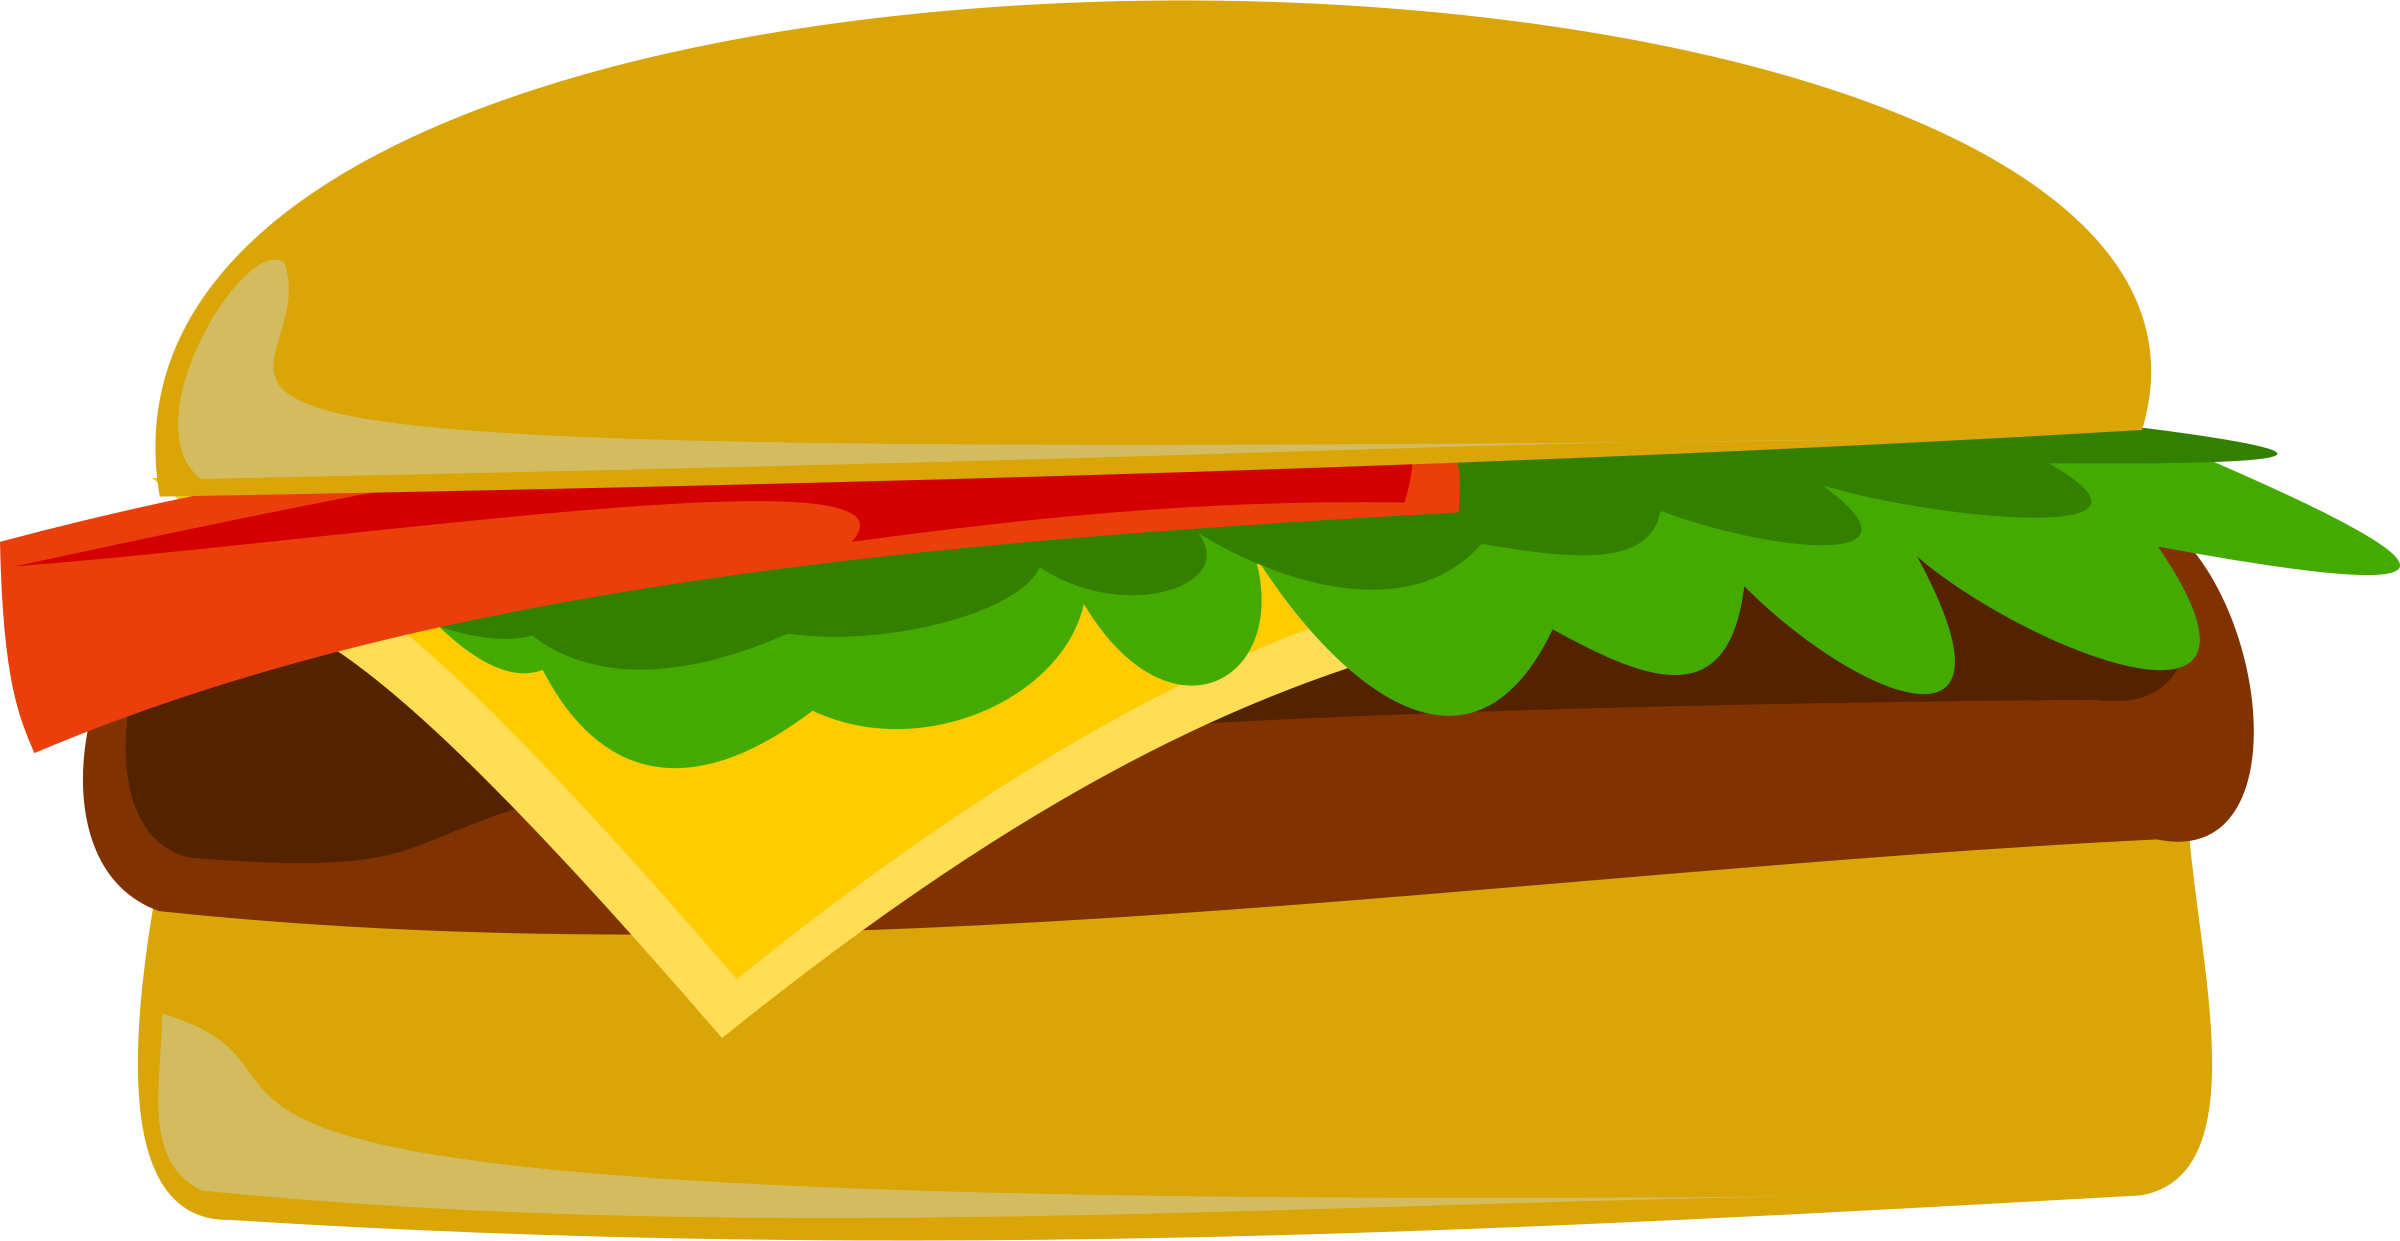 Hotdog And Hamburger Clipart - Hamburgers Hot Dogs, Transparent background PNG HD thumbnail